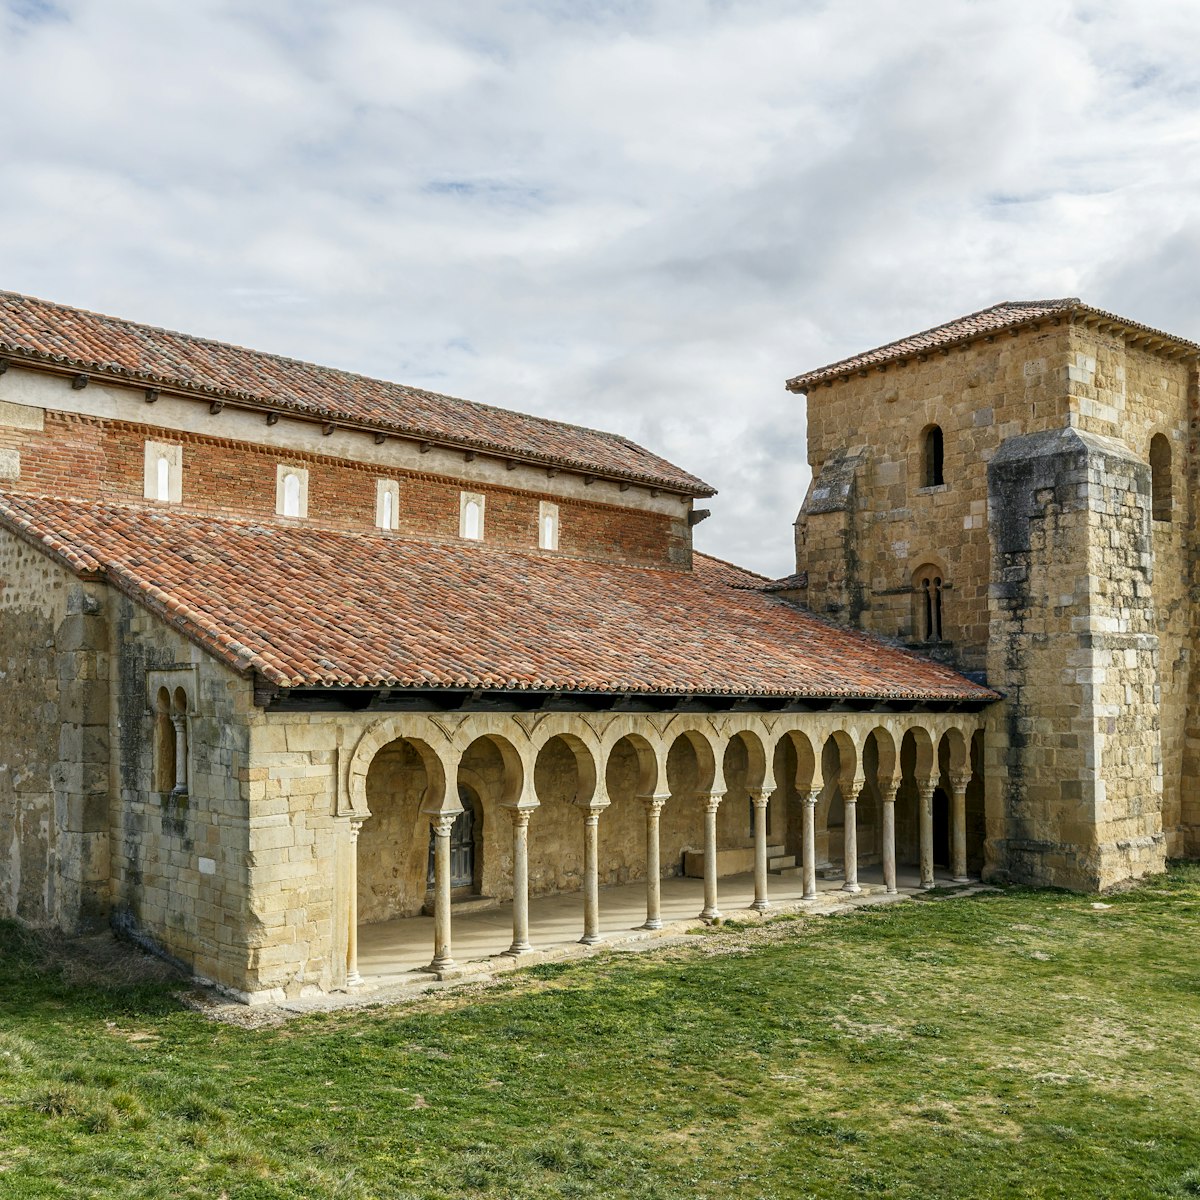 Monastery of San Miguel de Escalada in Leon, Spain.